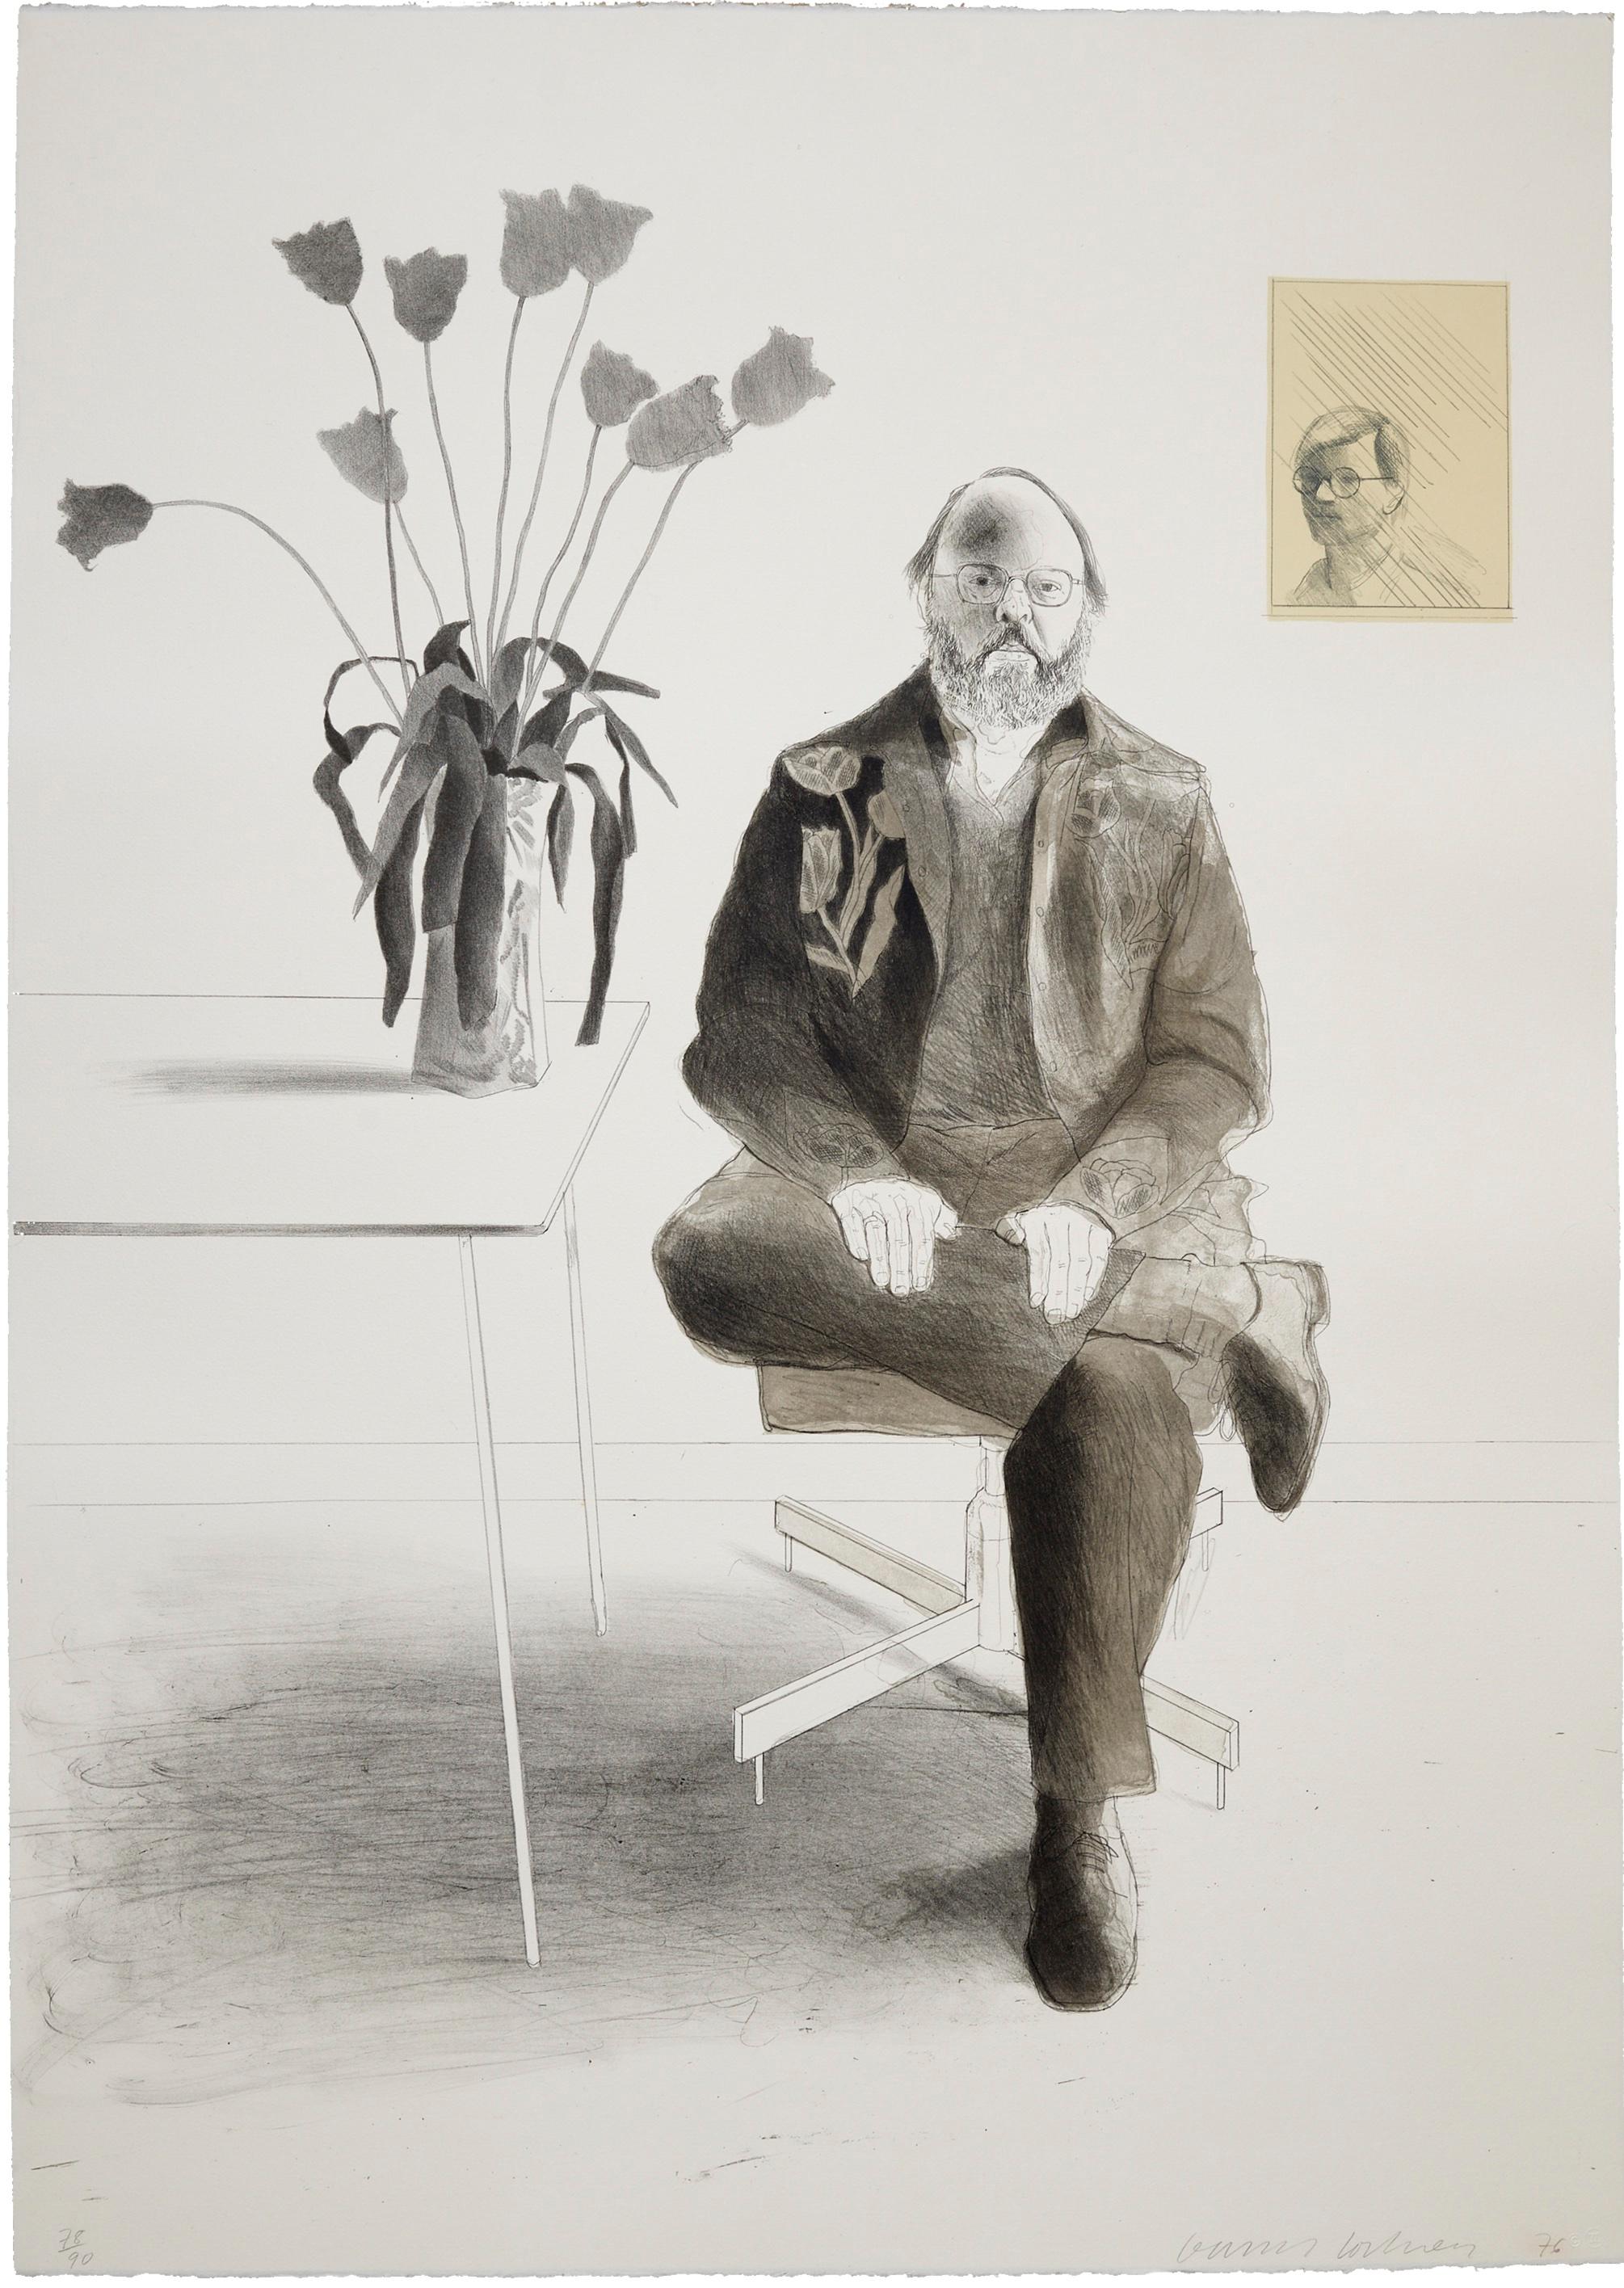 HENRY sitzend mit Tulpen, 1976 
David Hockney

Farblithografie, gedruckt auf Arches-Schimmelvelours
Mit Bleistift signiert, datiert und nummeriert aus einer Auflage von 90 Stück
Von Freunden
Gedruckt von Gemini, A.E.L., Los Angeles
Blatt: 105,7 ×